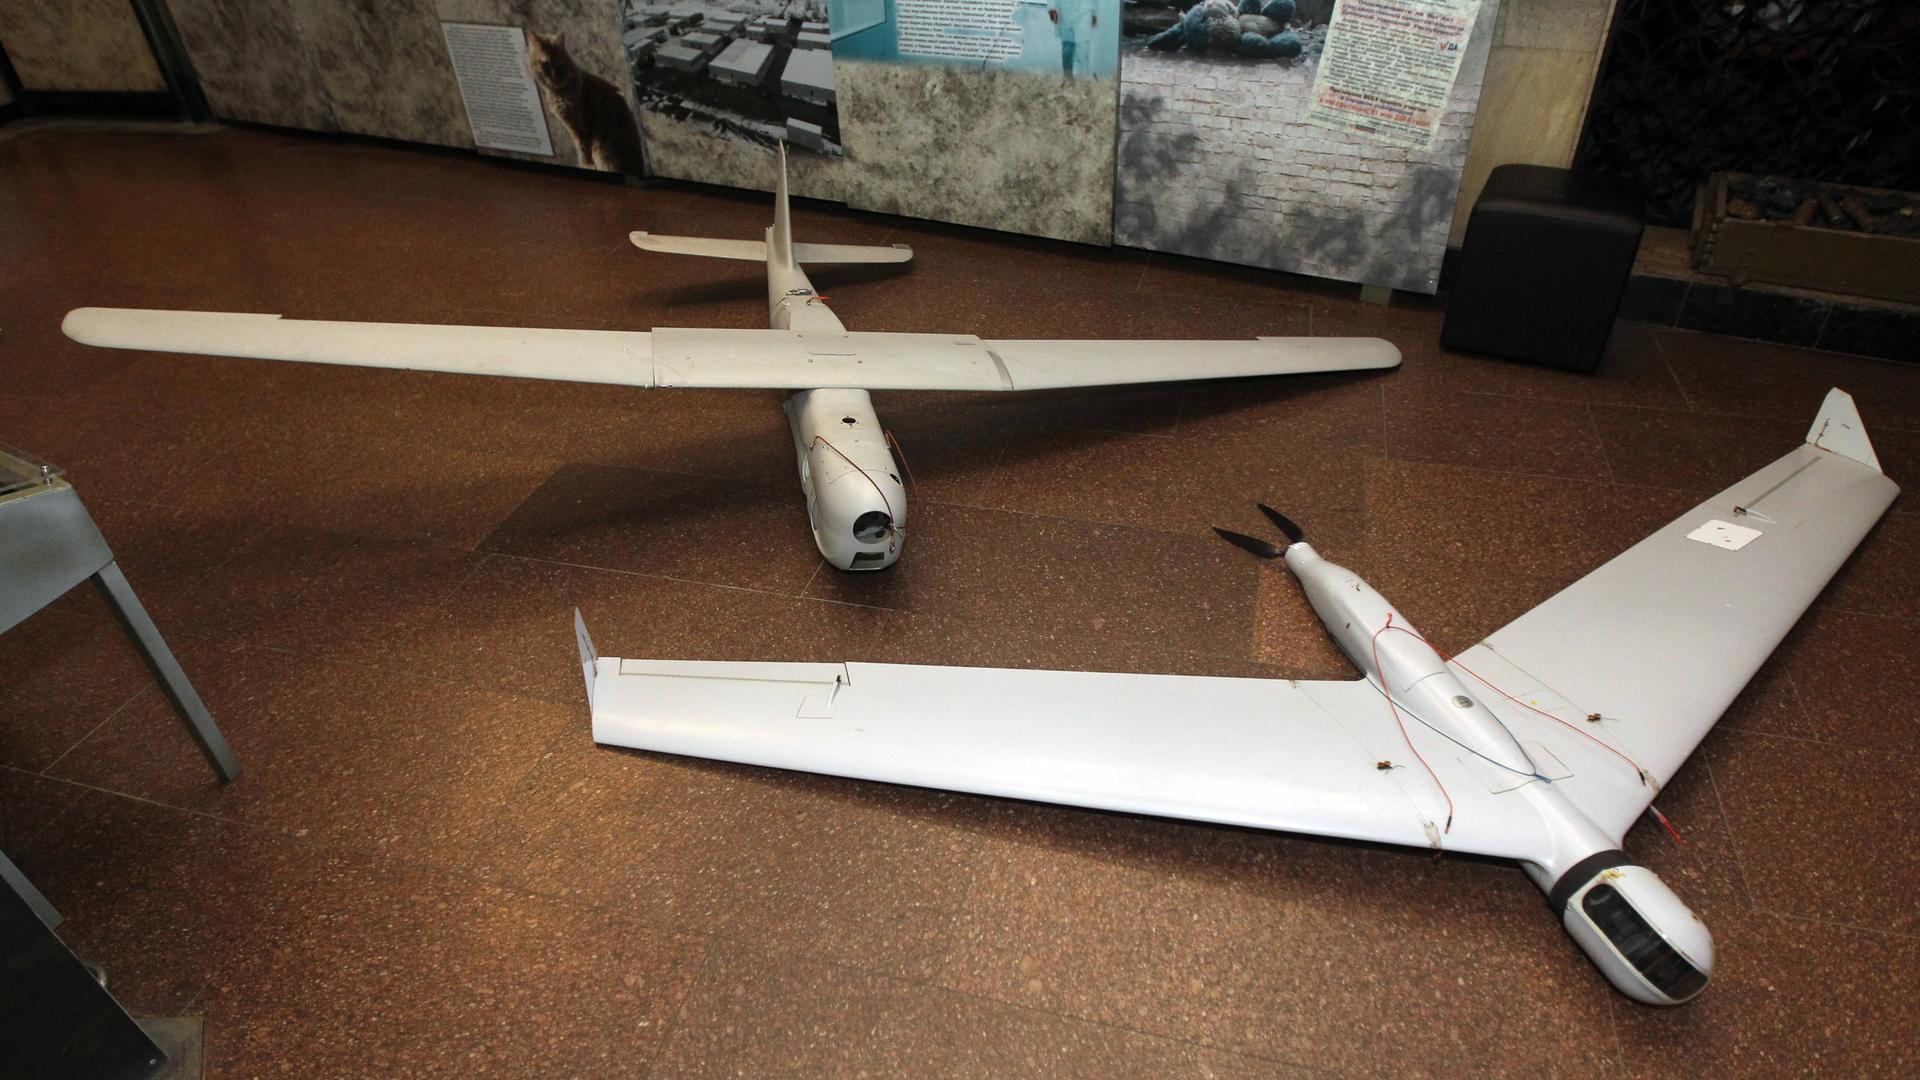 Zwei abgeschossene russische Drohnen liegen in einem Museum in Dnipro auf dem Boden nebeneinander.